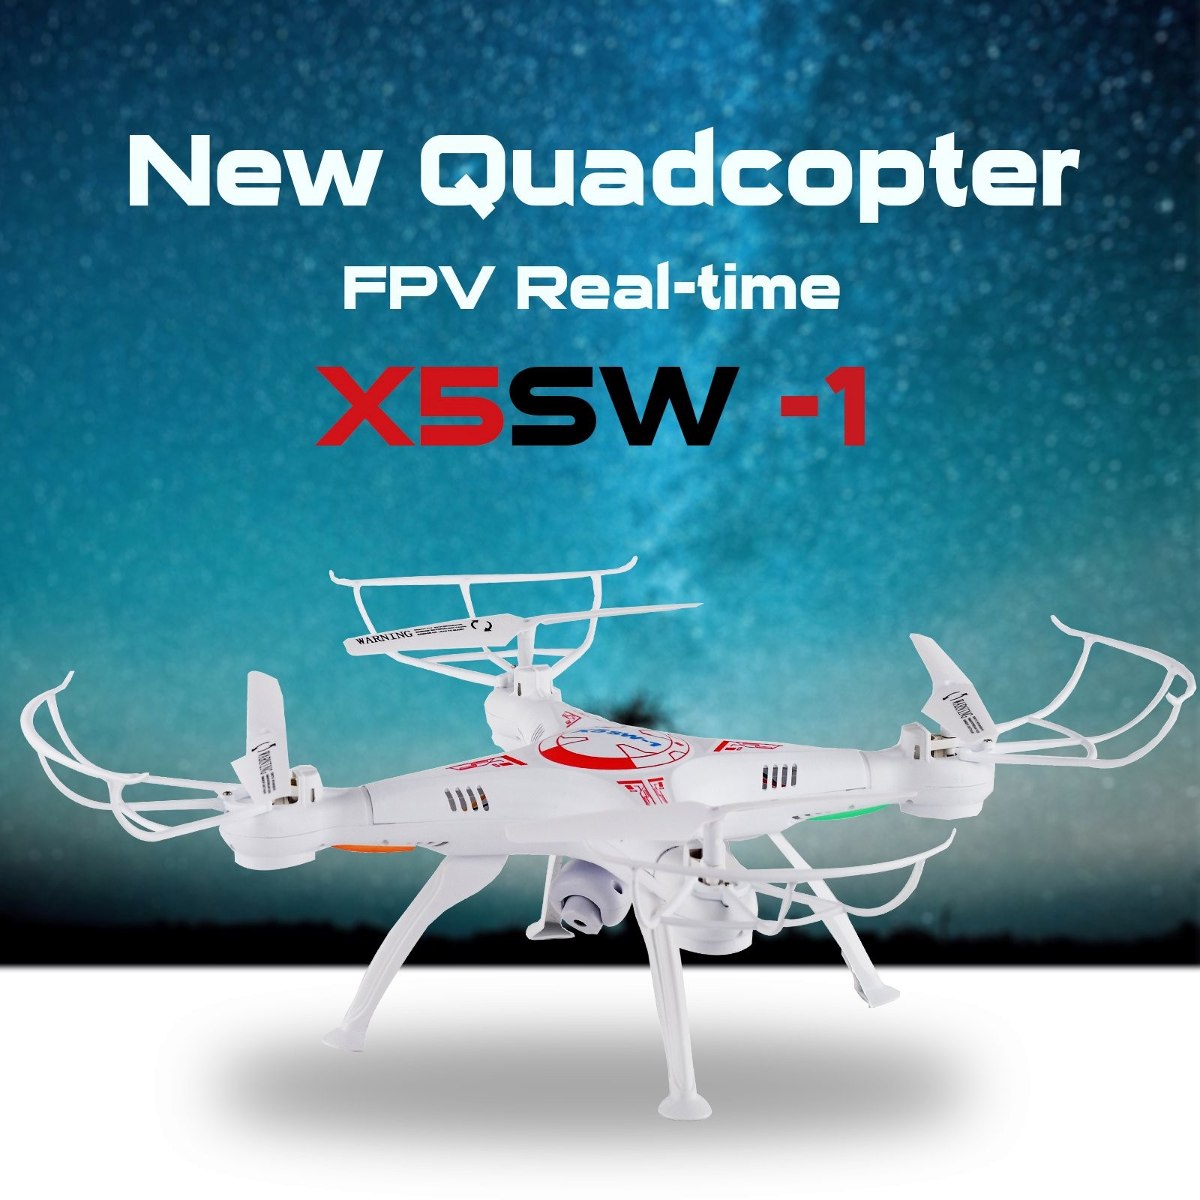 x5sw1 drone